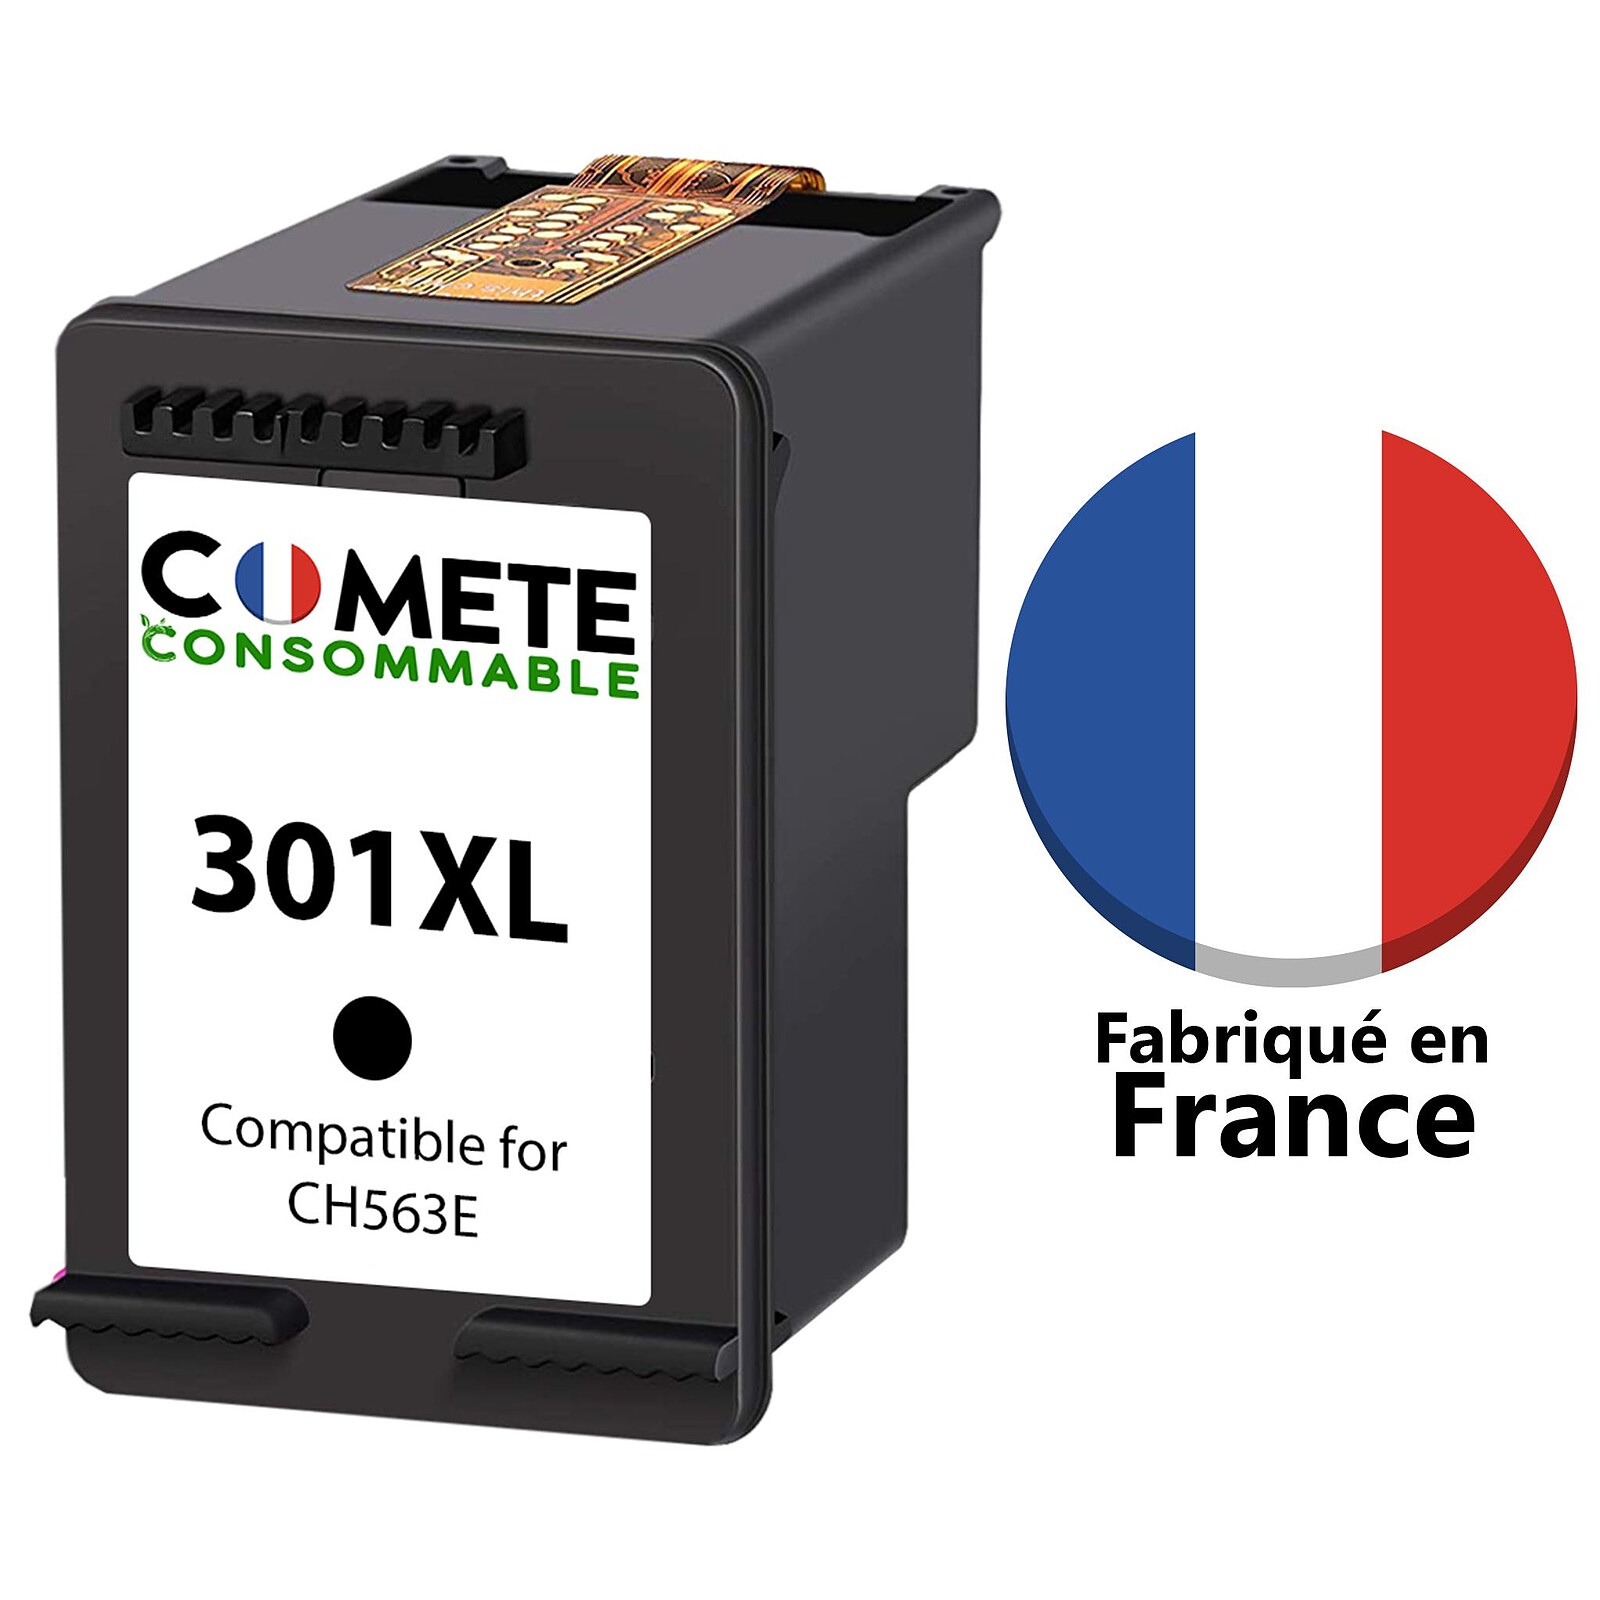 Cartouche compatible HP 301XL - noir - La cartouche Française